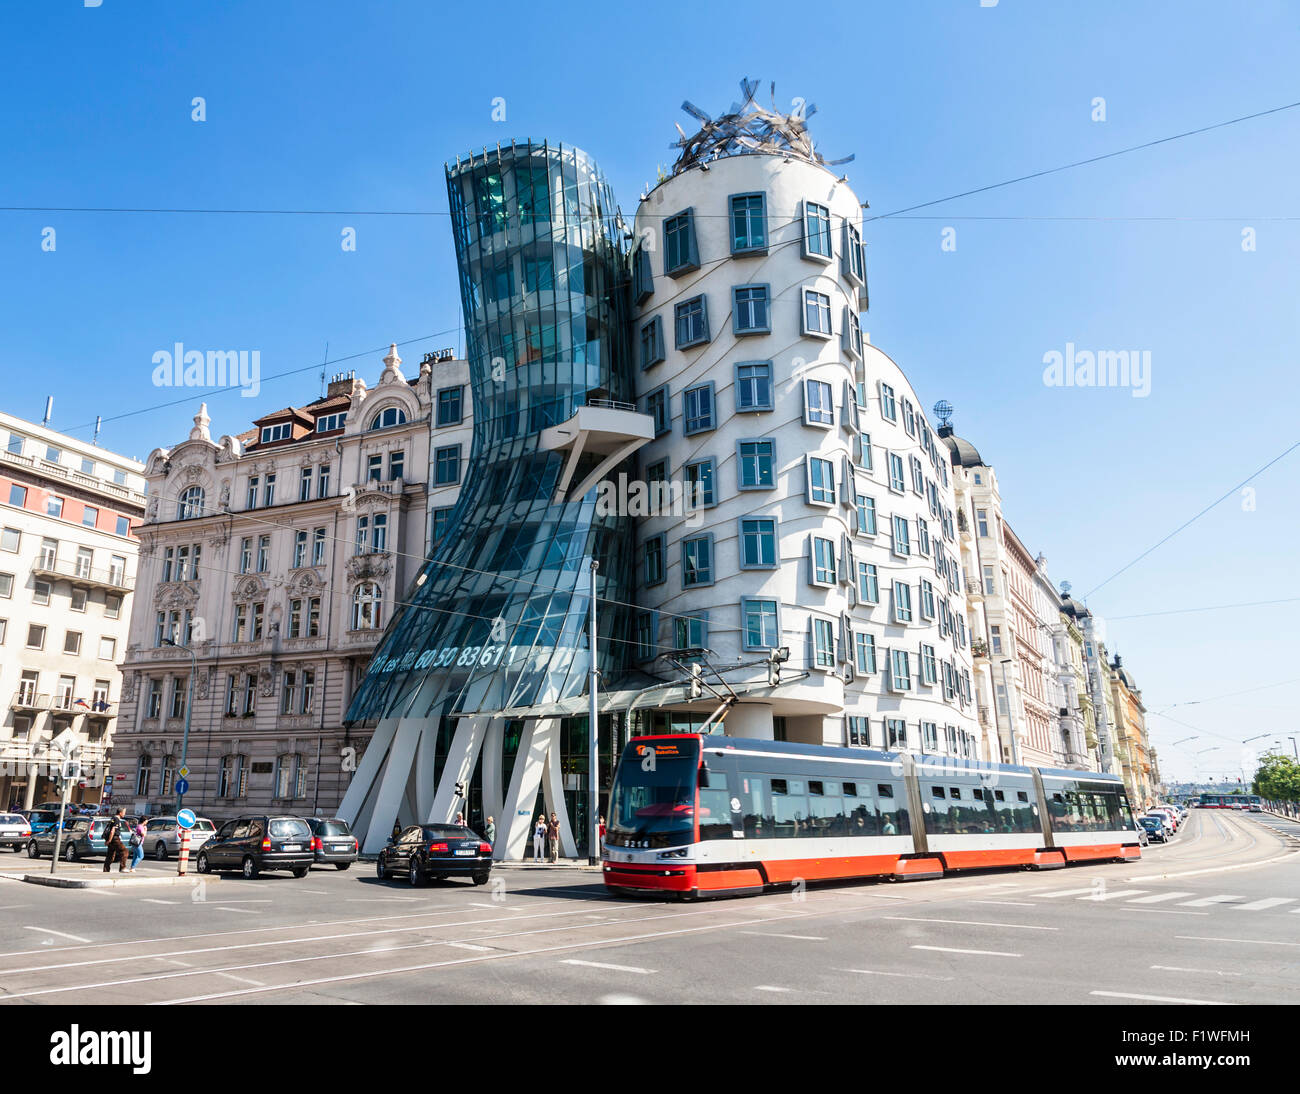 La casa de baile diseñado por Frank Gehry, Praga, República Checa. Foto de stock